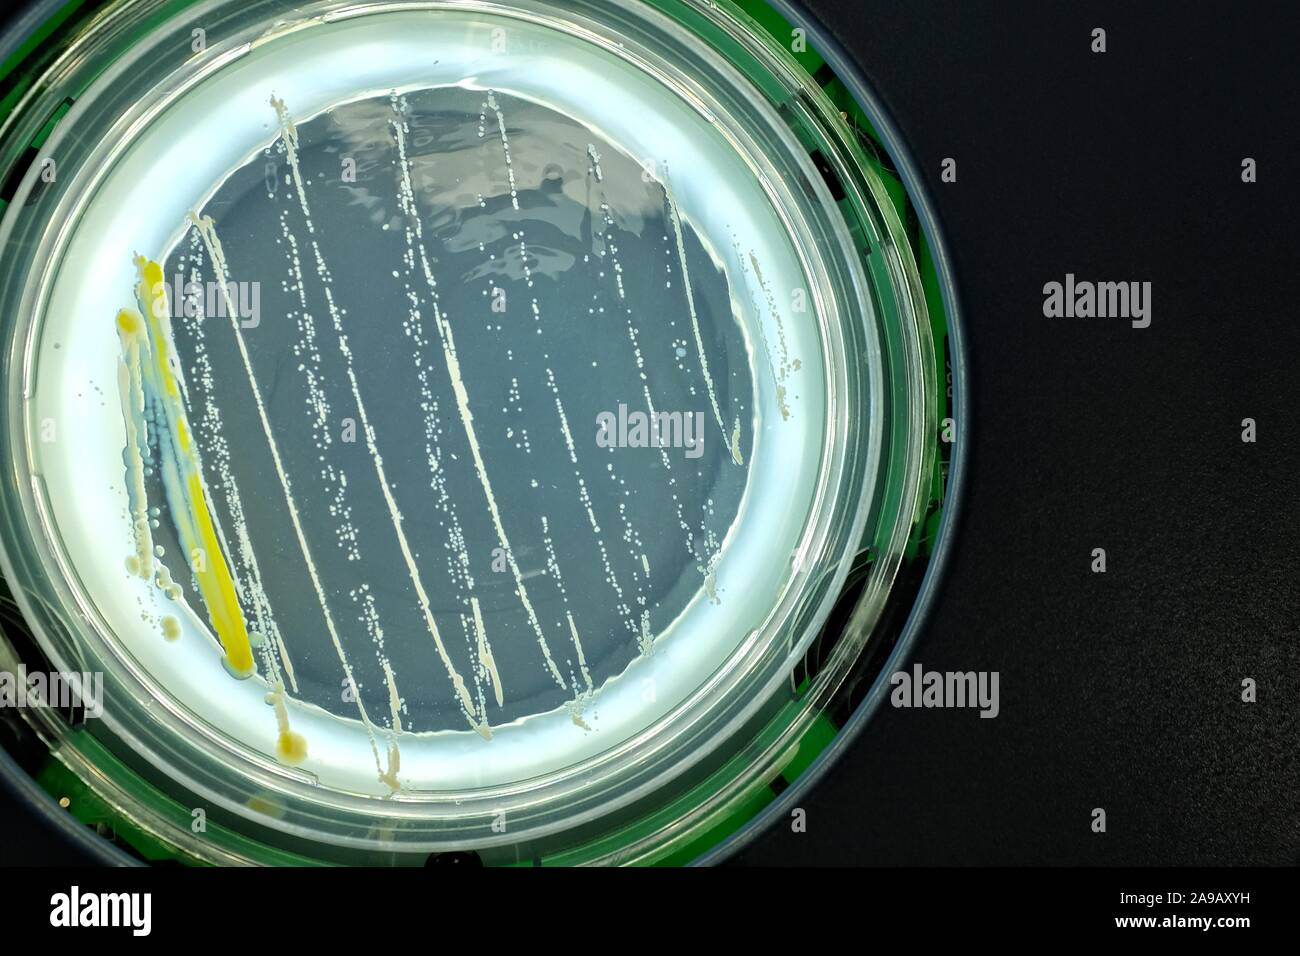 Bacteria on agar surface Stock Photo